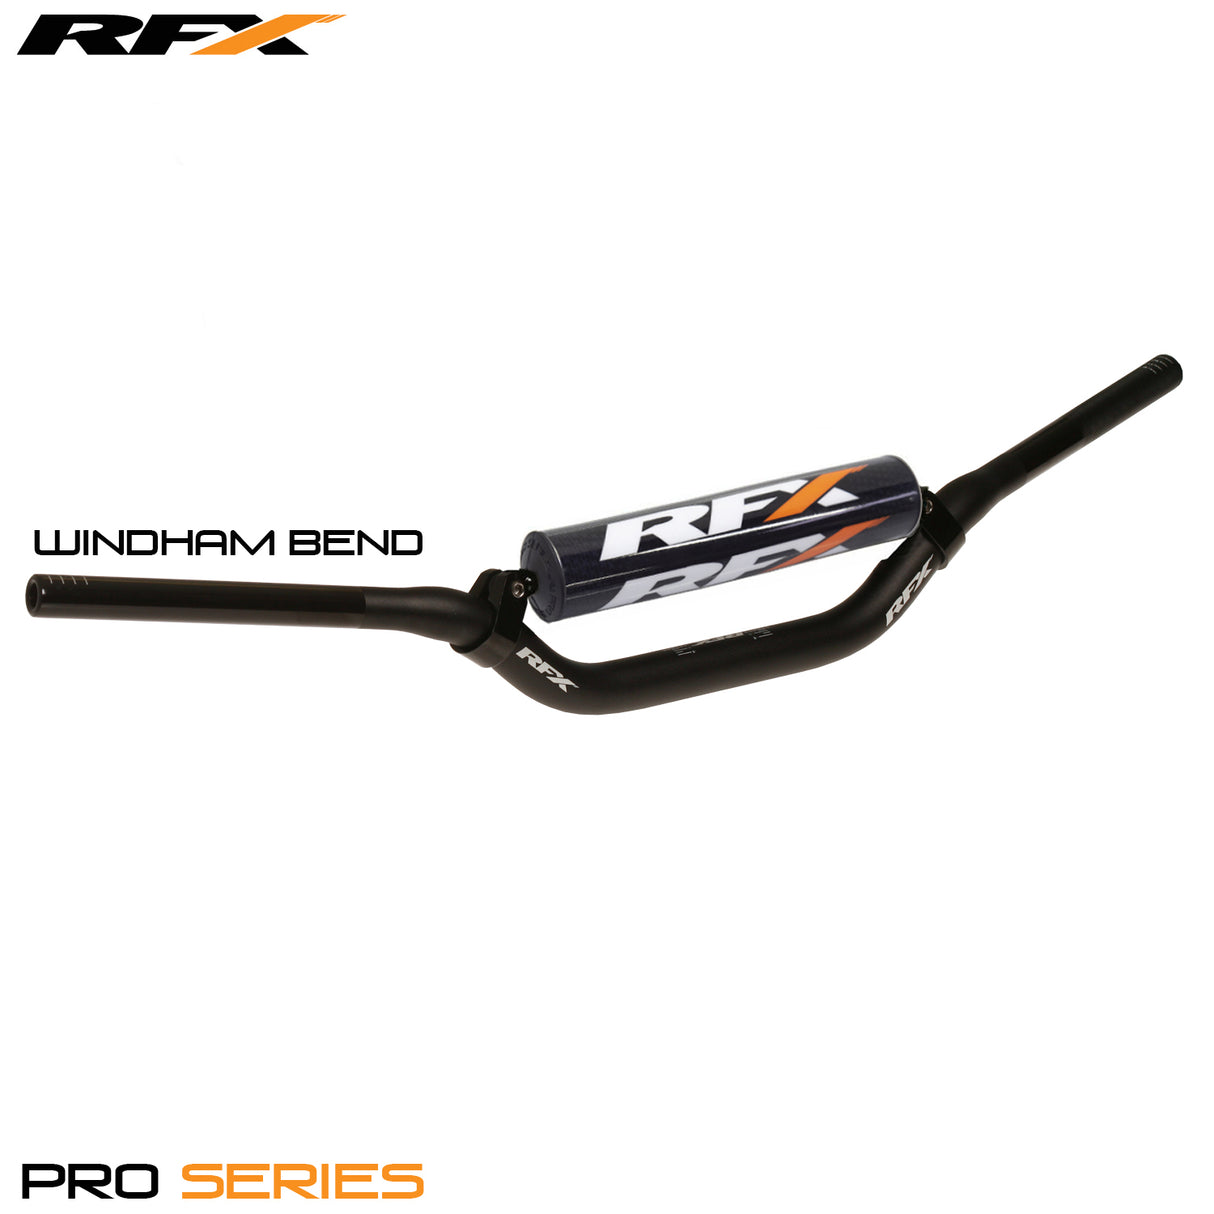 RFX Pro F8 Taper Bar 28.6mm (Crossbrace) Windham